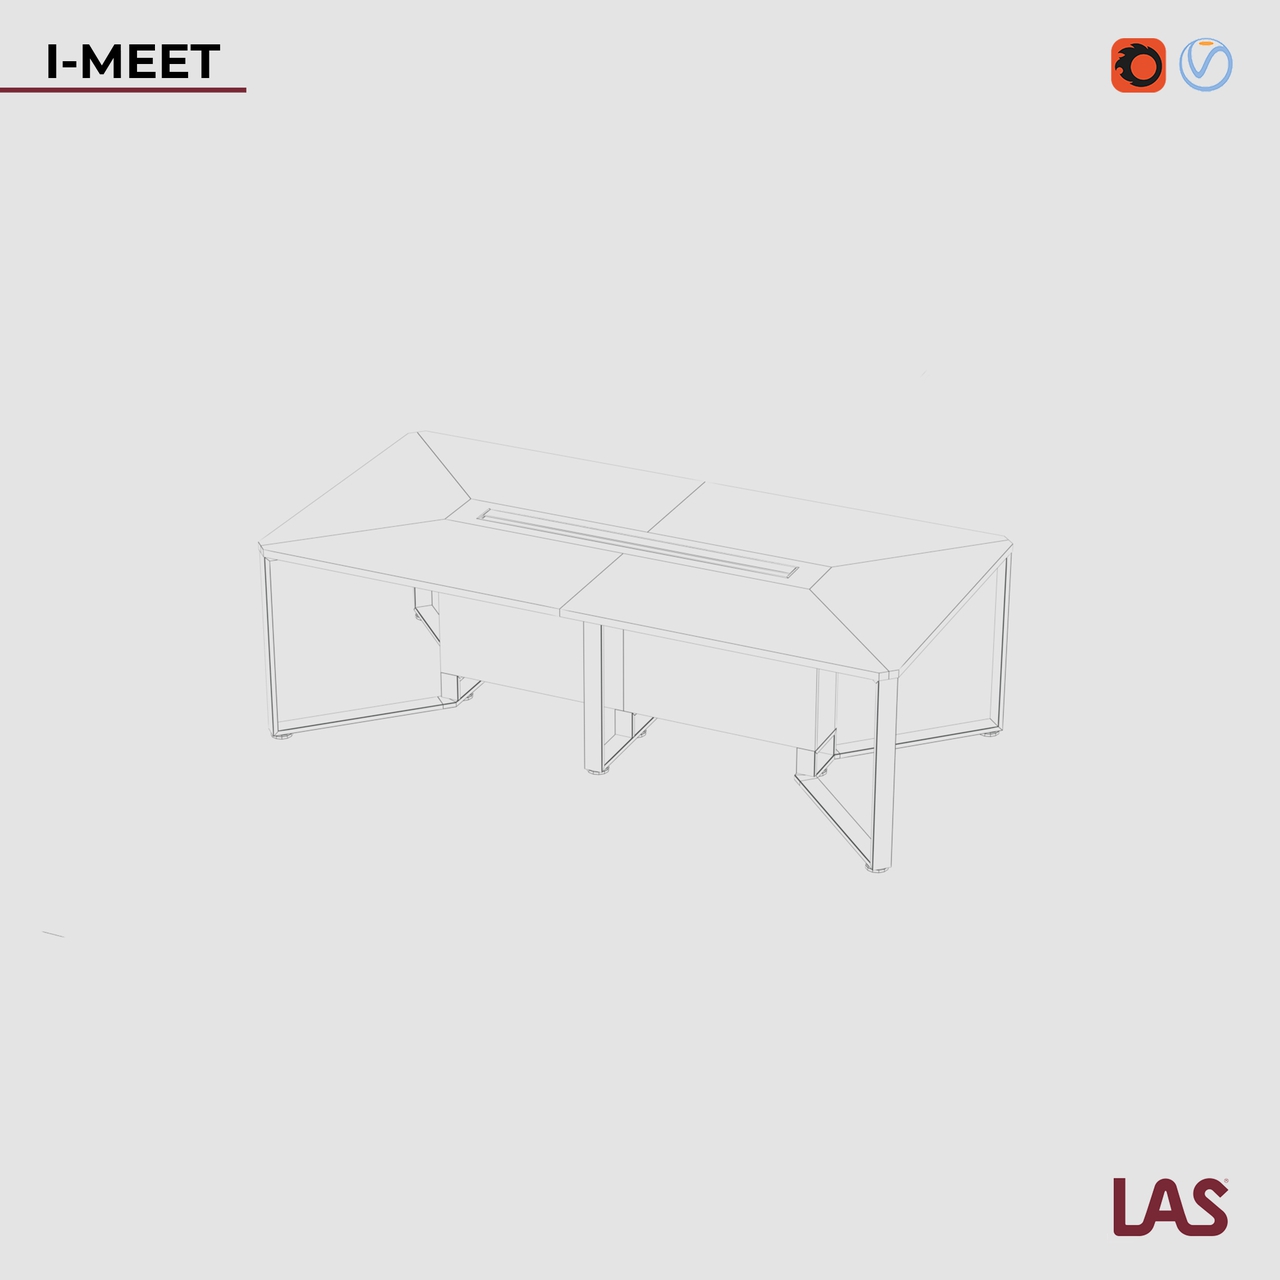 Превью G 3D-модели прямоугольного переговорного стола на 6 человек LAS I-Meet 146644